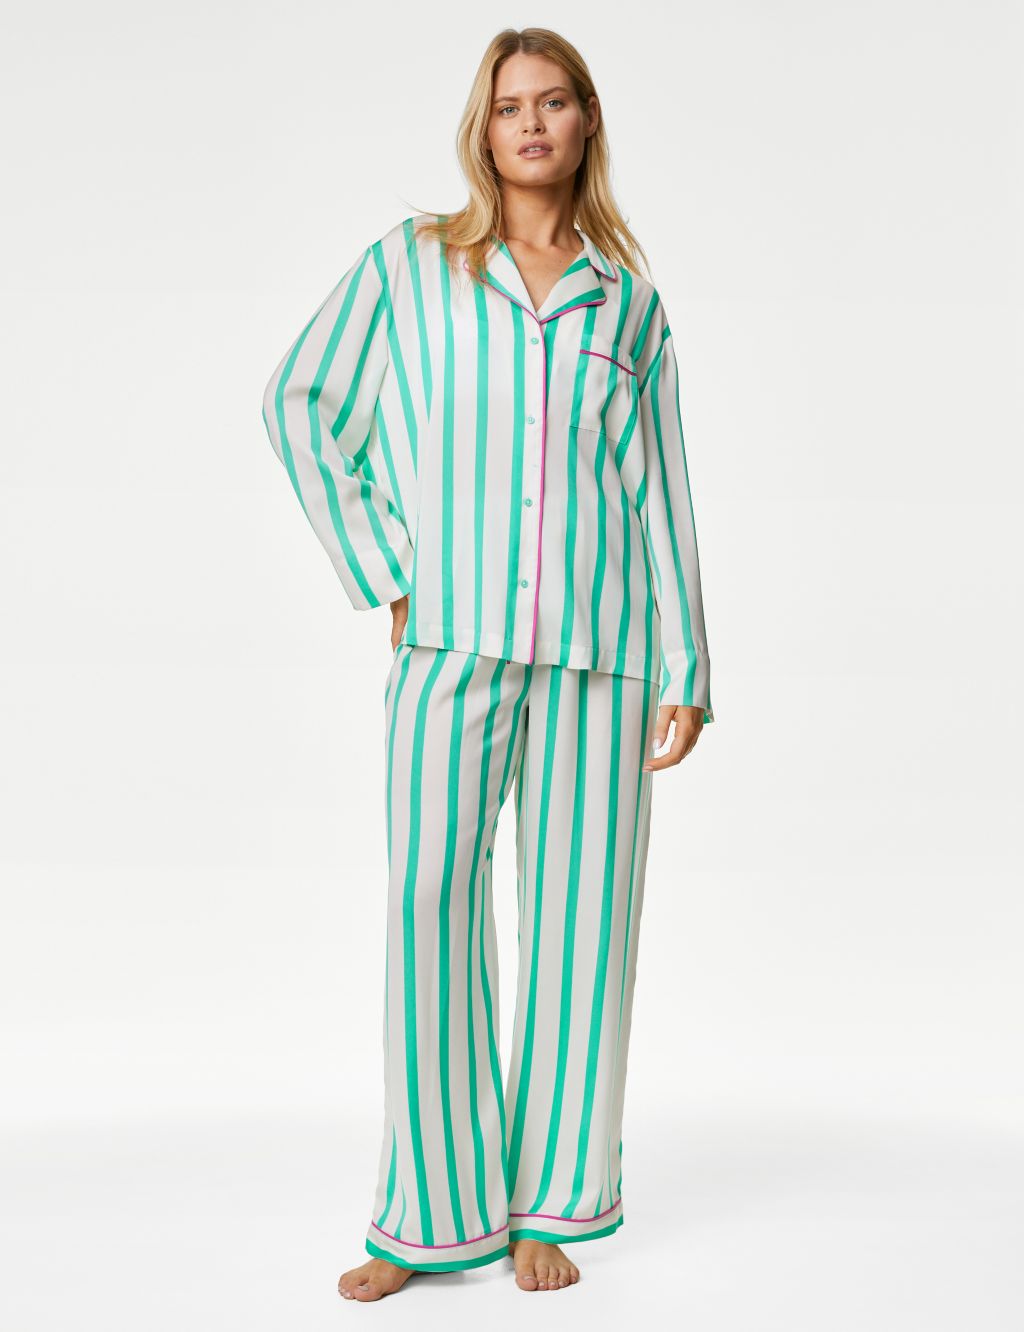 Dream Satin™ Striped Pyjama Set image 1